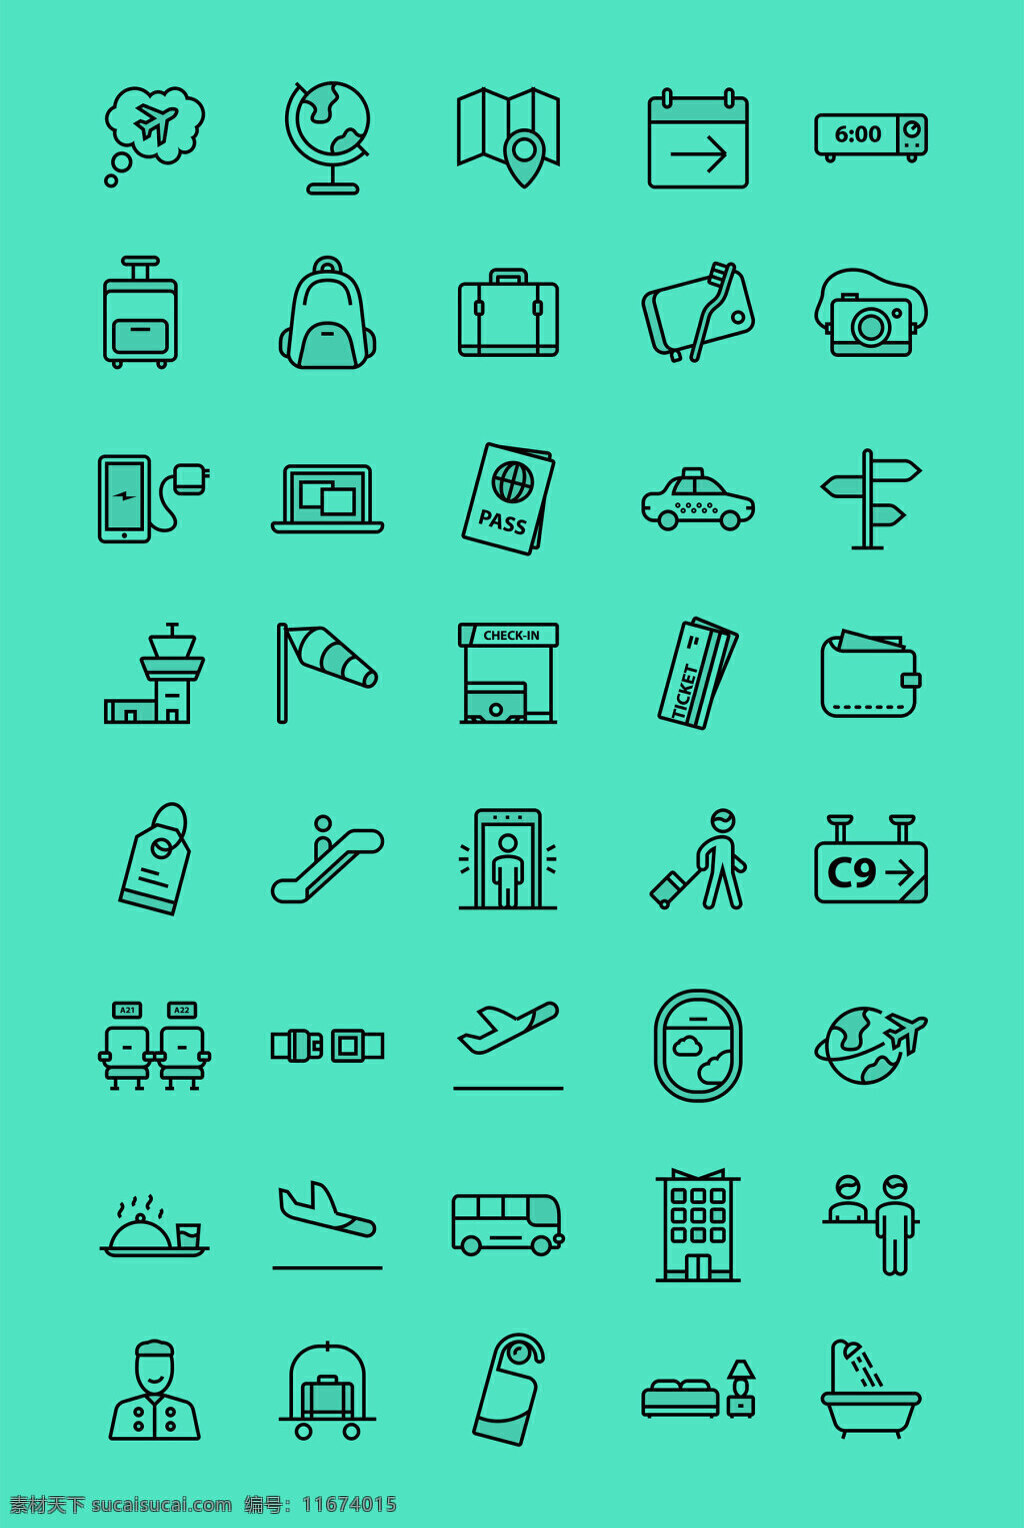 航行 旅游 图标 集 创意图标 图标下载 图标设计 表情图标 迷你图标 通用图标 网页图标 icon